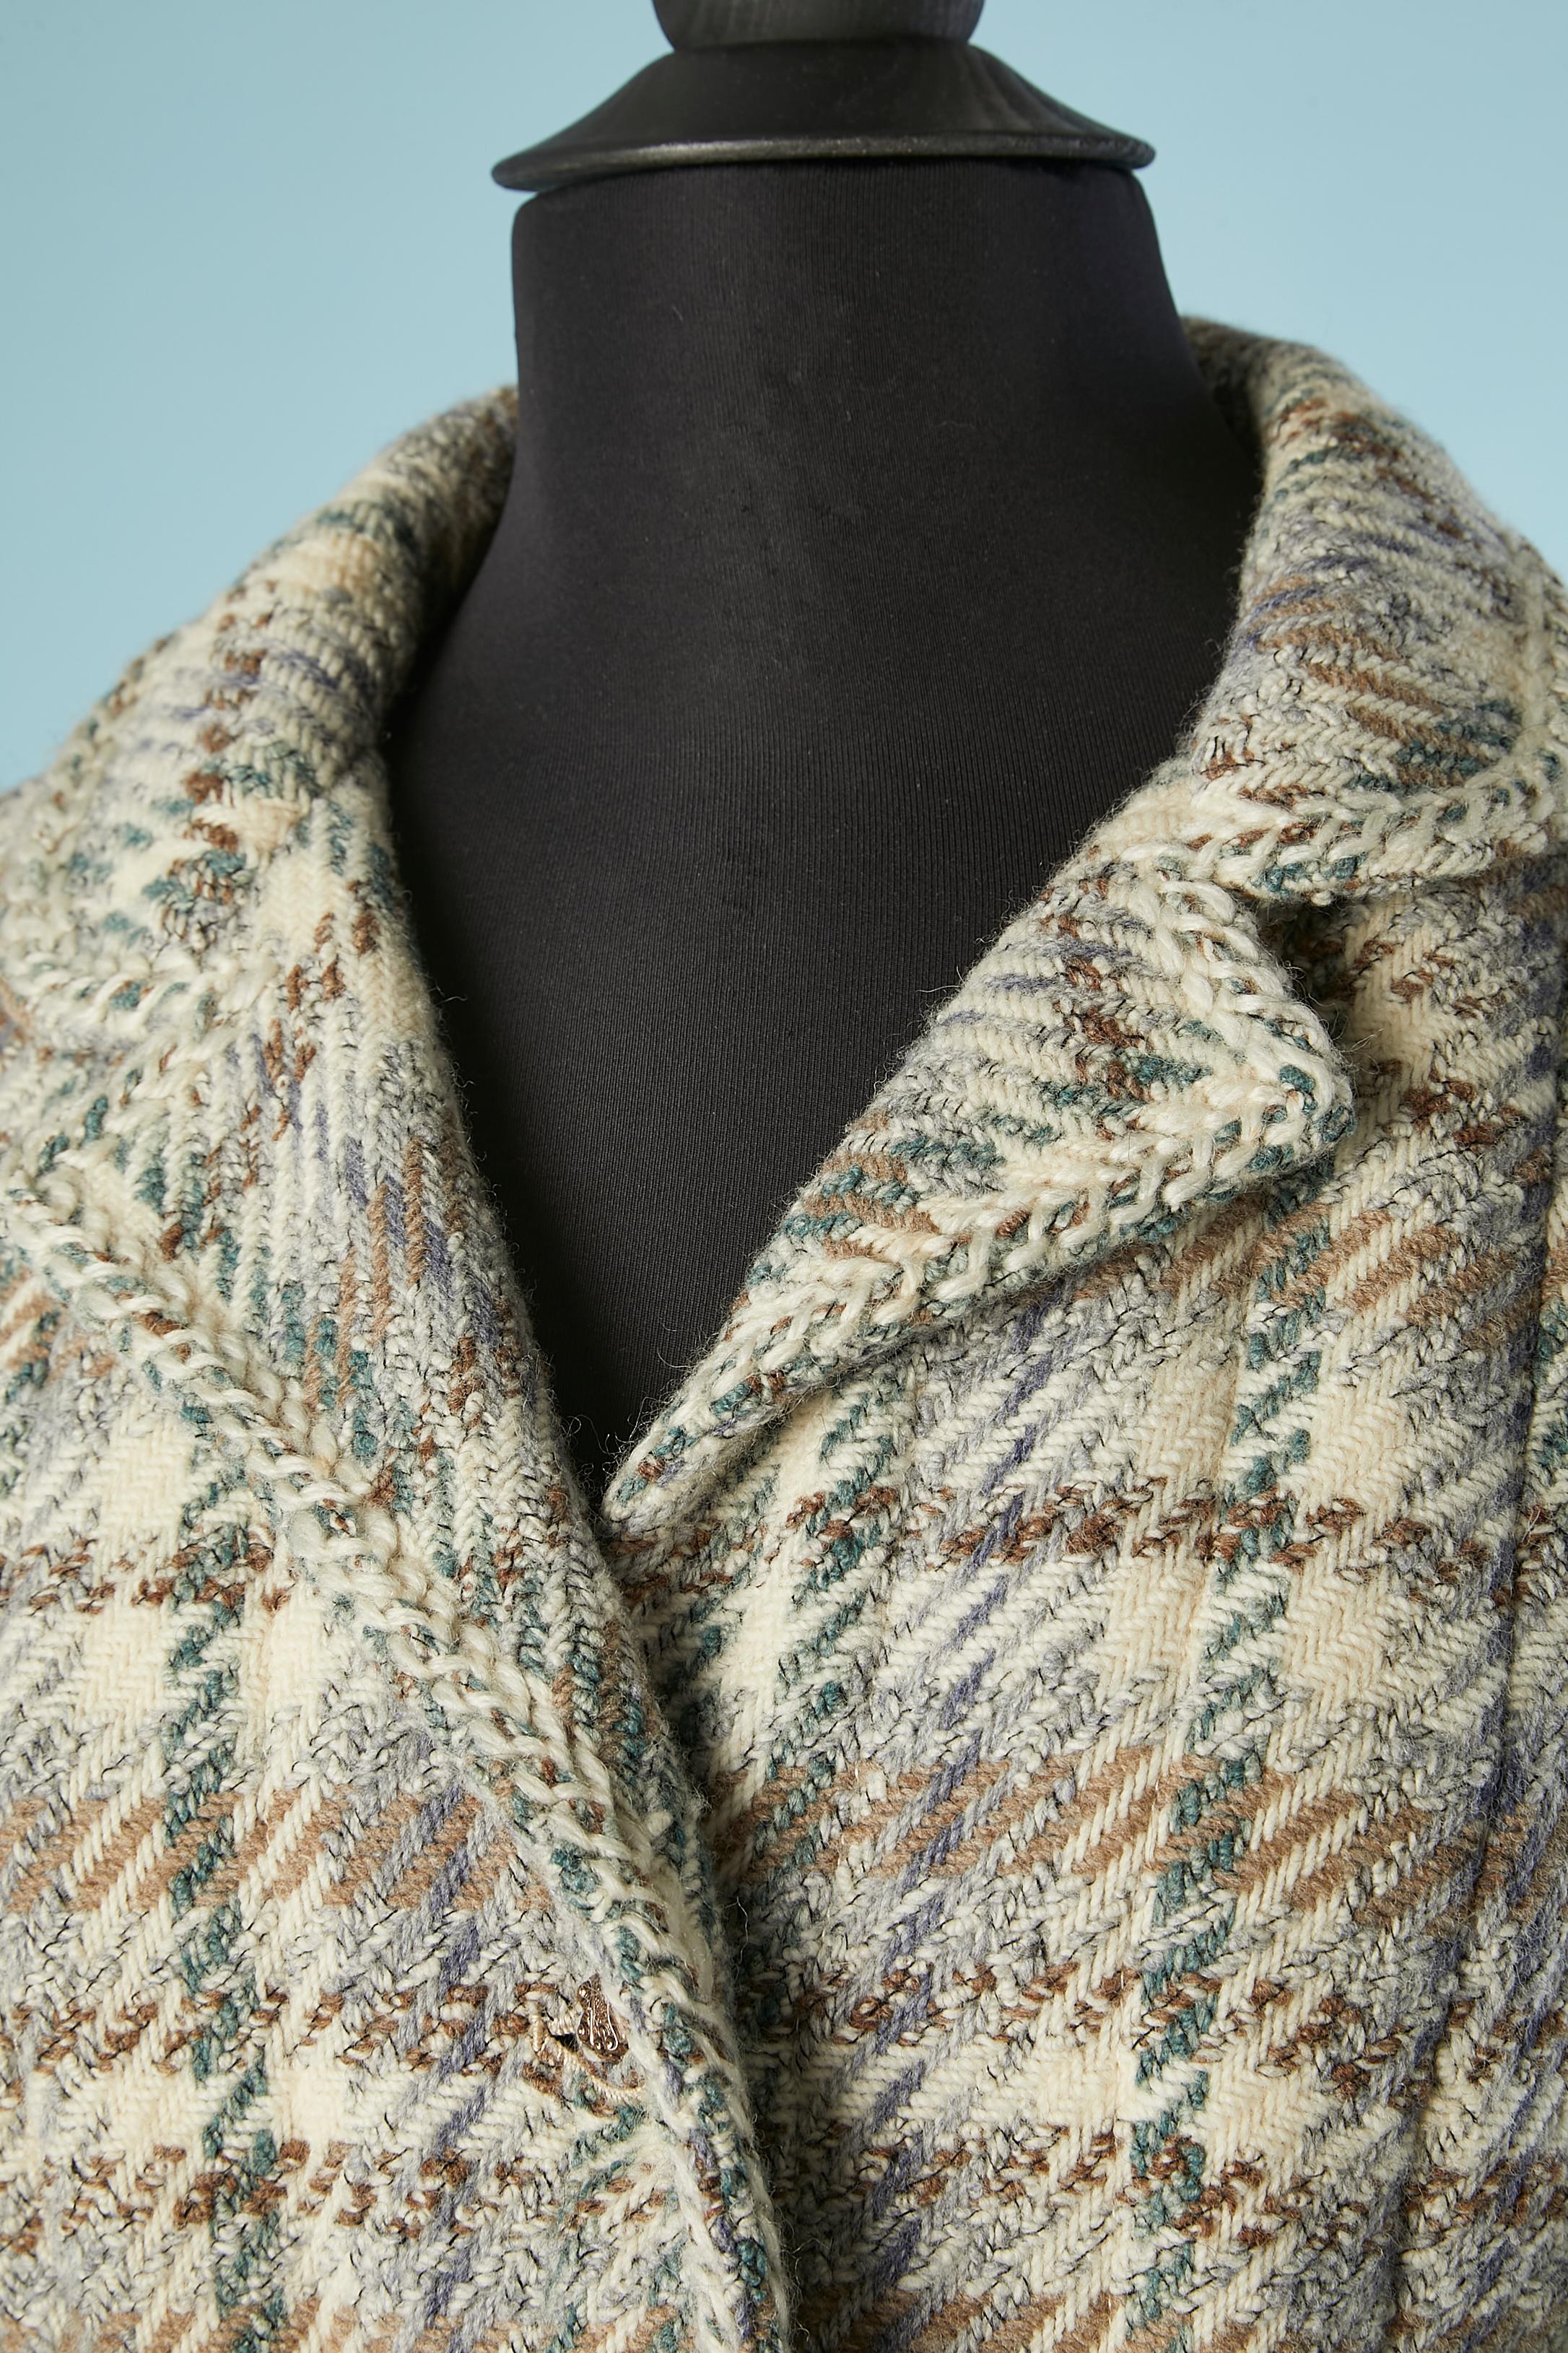 Combinaison jupe en tweed gris, ivoire et bleu. Composition du tissu : laine. Doublure en soie (d'origine à l'intérieur de la veste et plus récente à l'intérieur de la jupe) Bouton en métal et tweed. Demi-courroie. Surpiqûres verticales pour